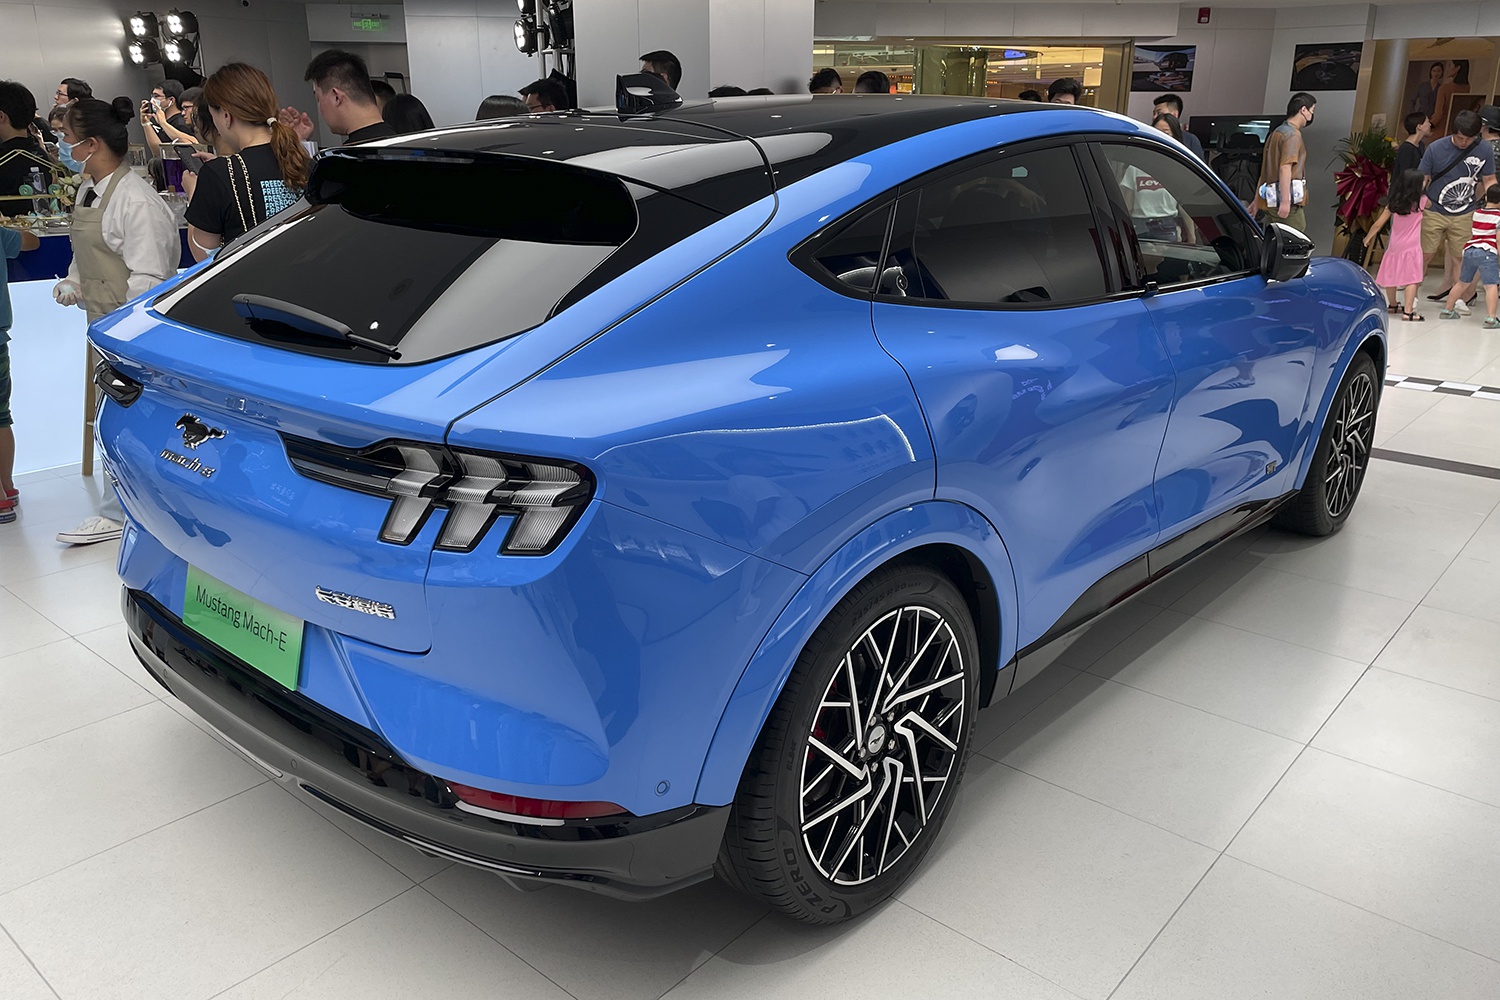 补贴后售28.2万元 Mustang Mach-E新增车型上市